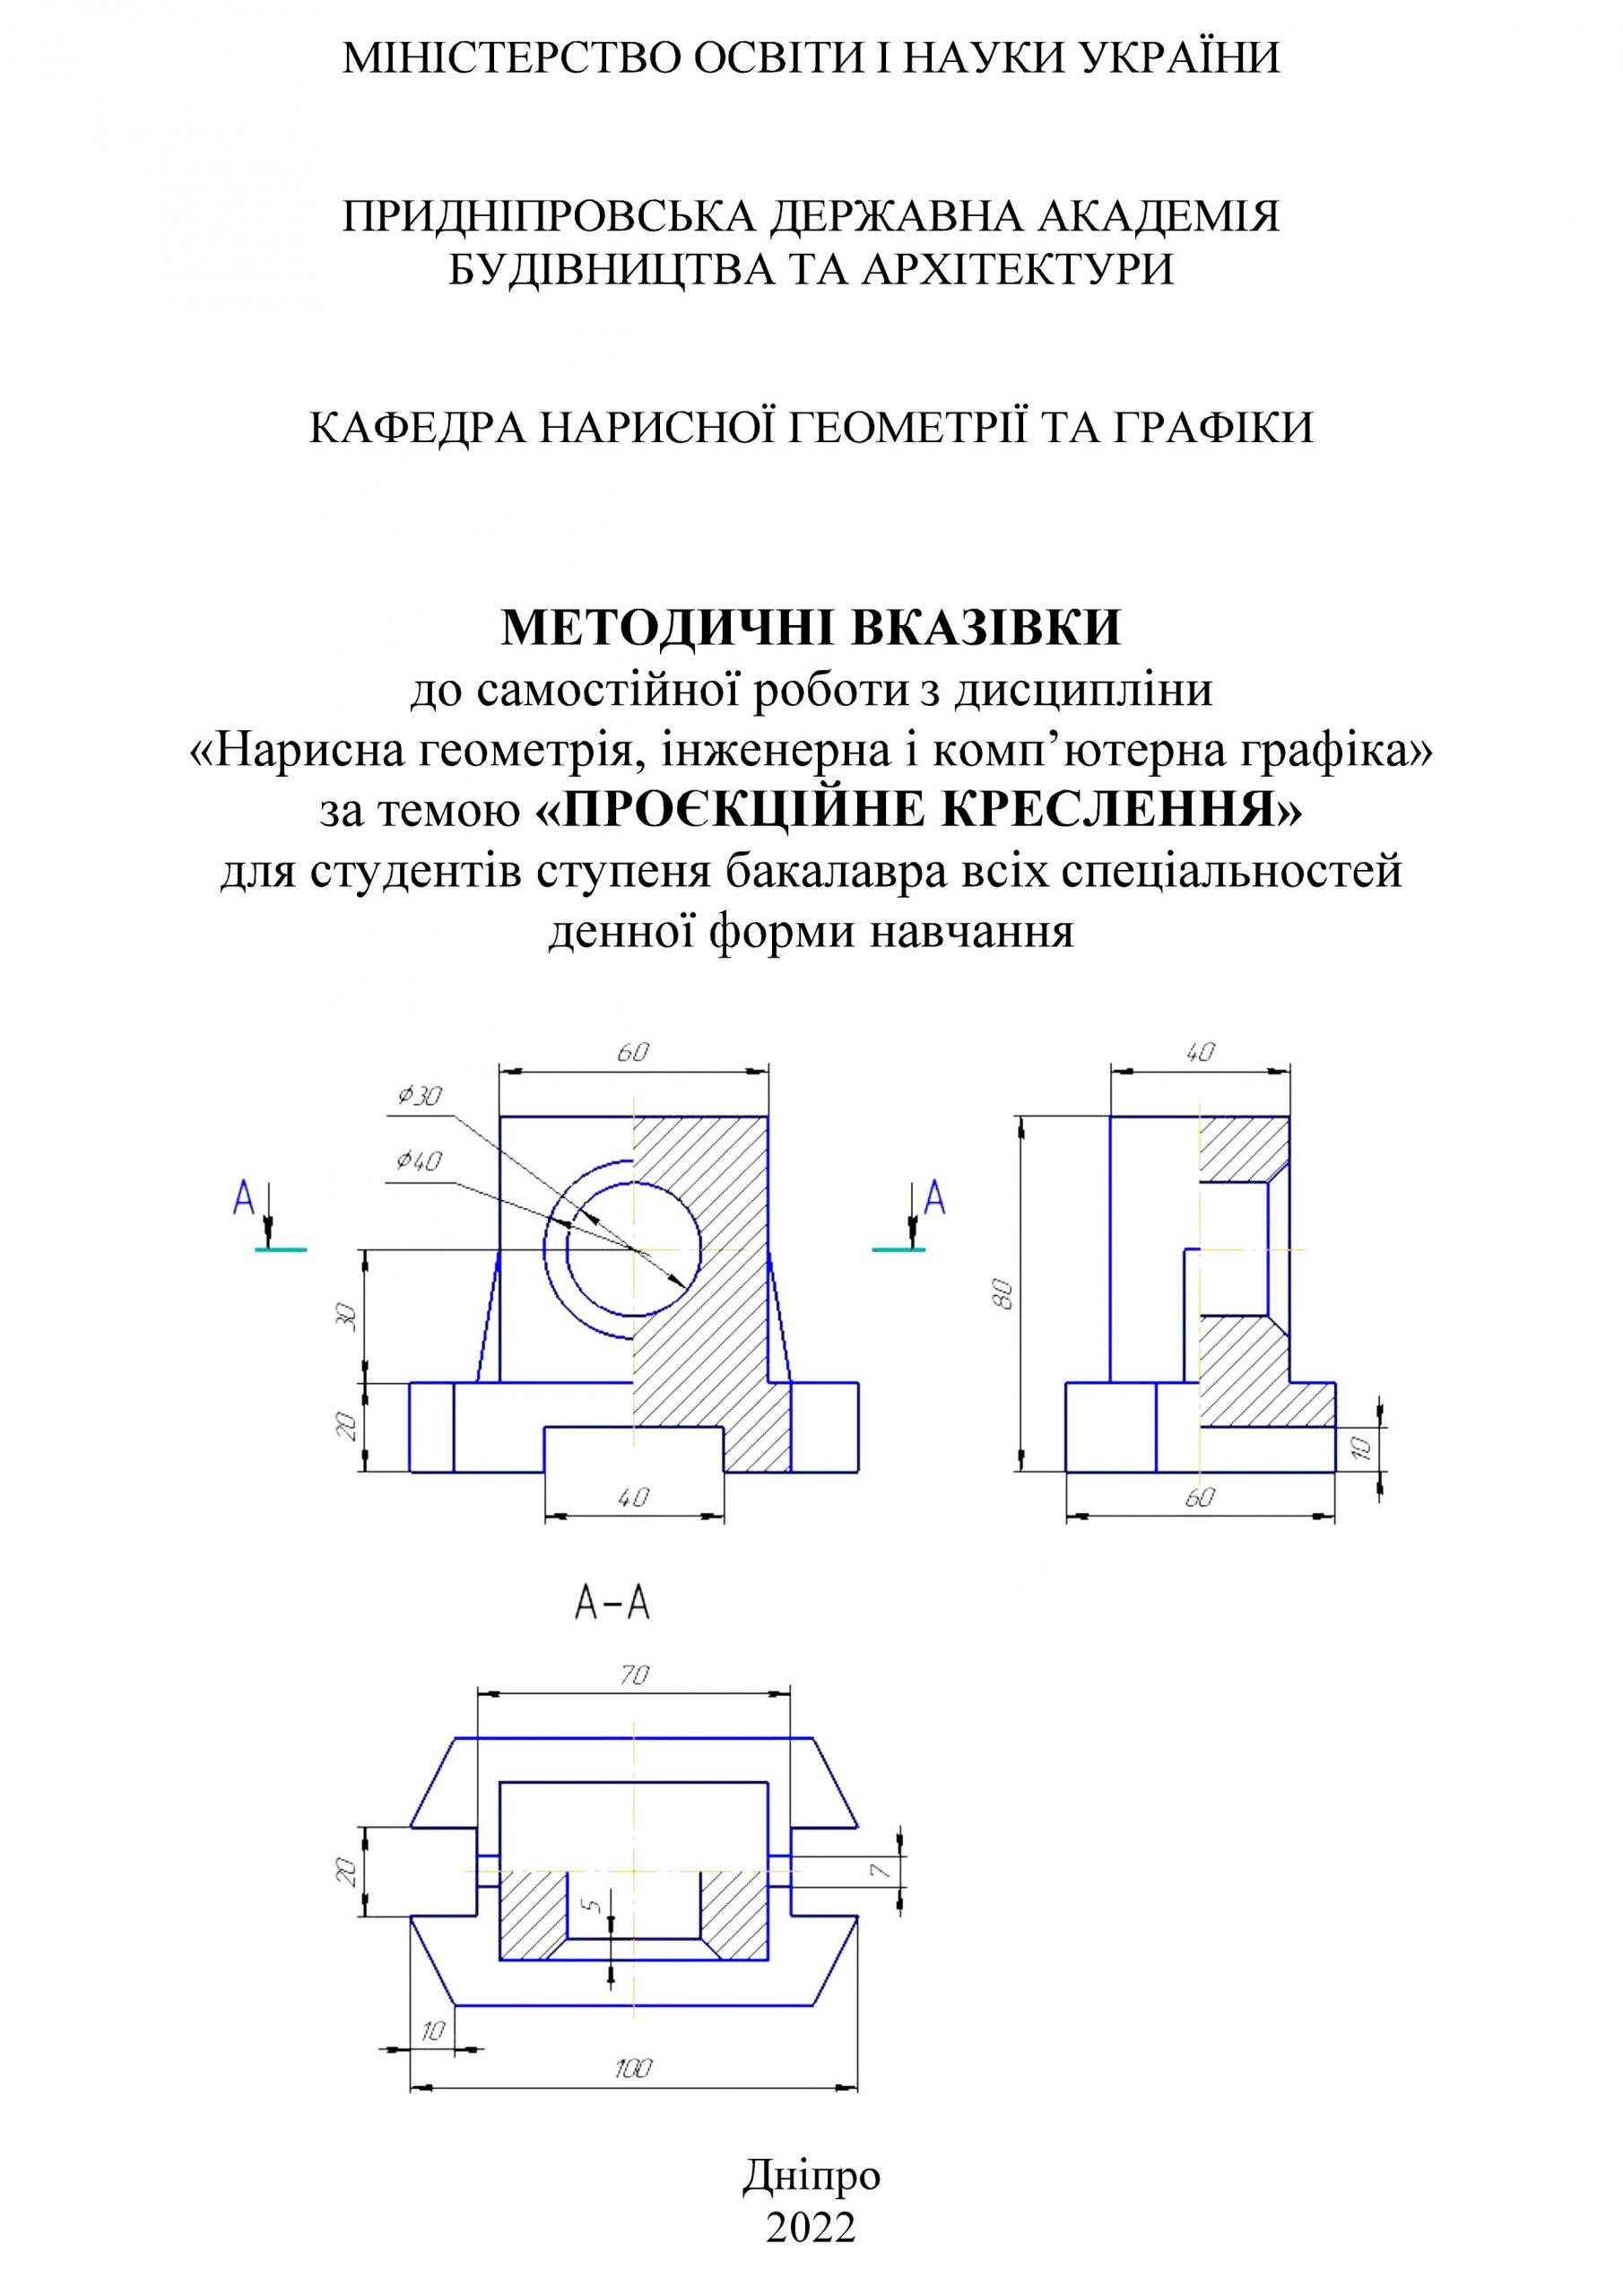 Методичні вказівки до самостійної роботи з дисципліни «Нарисна геометрія, інженерна і комп’ютерна графіка» за темою «Проєкційне креслення», 2022